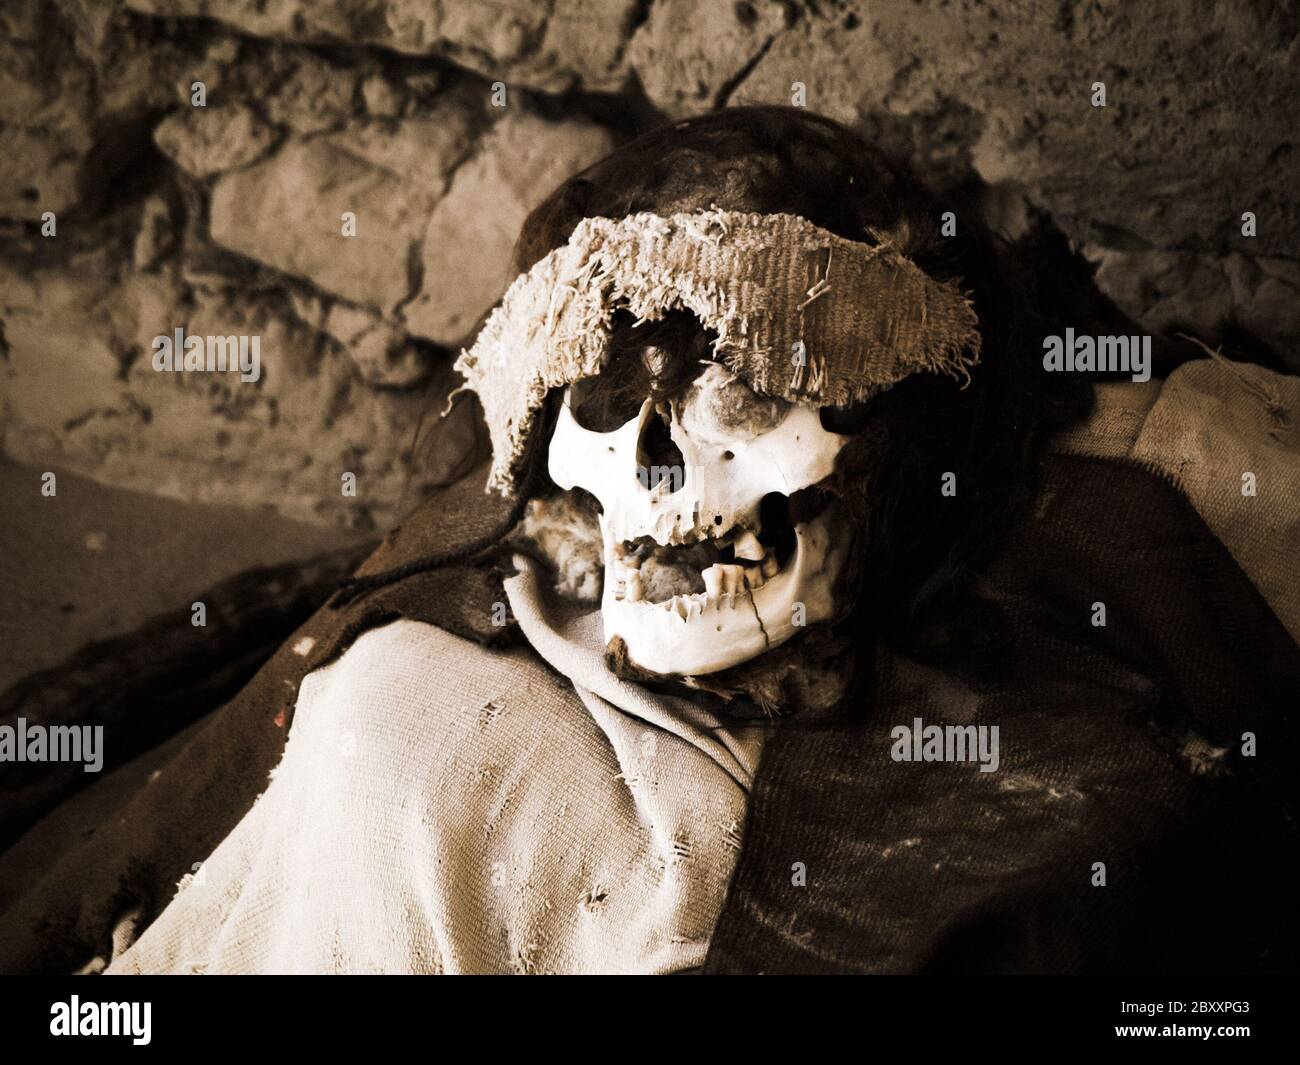 Momie pré-incan dans le site archéologique de Chauchilla, Nazca, Pérou. Banque D'Images